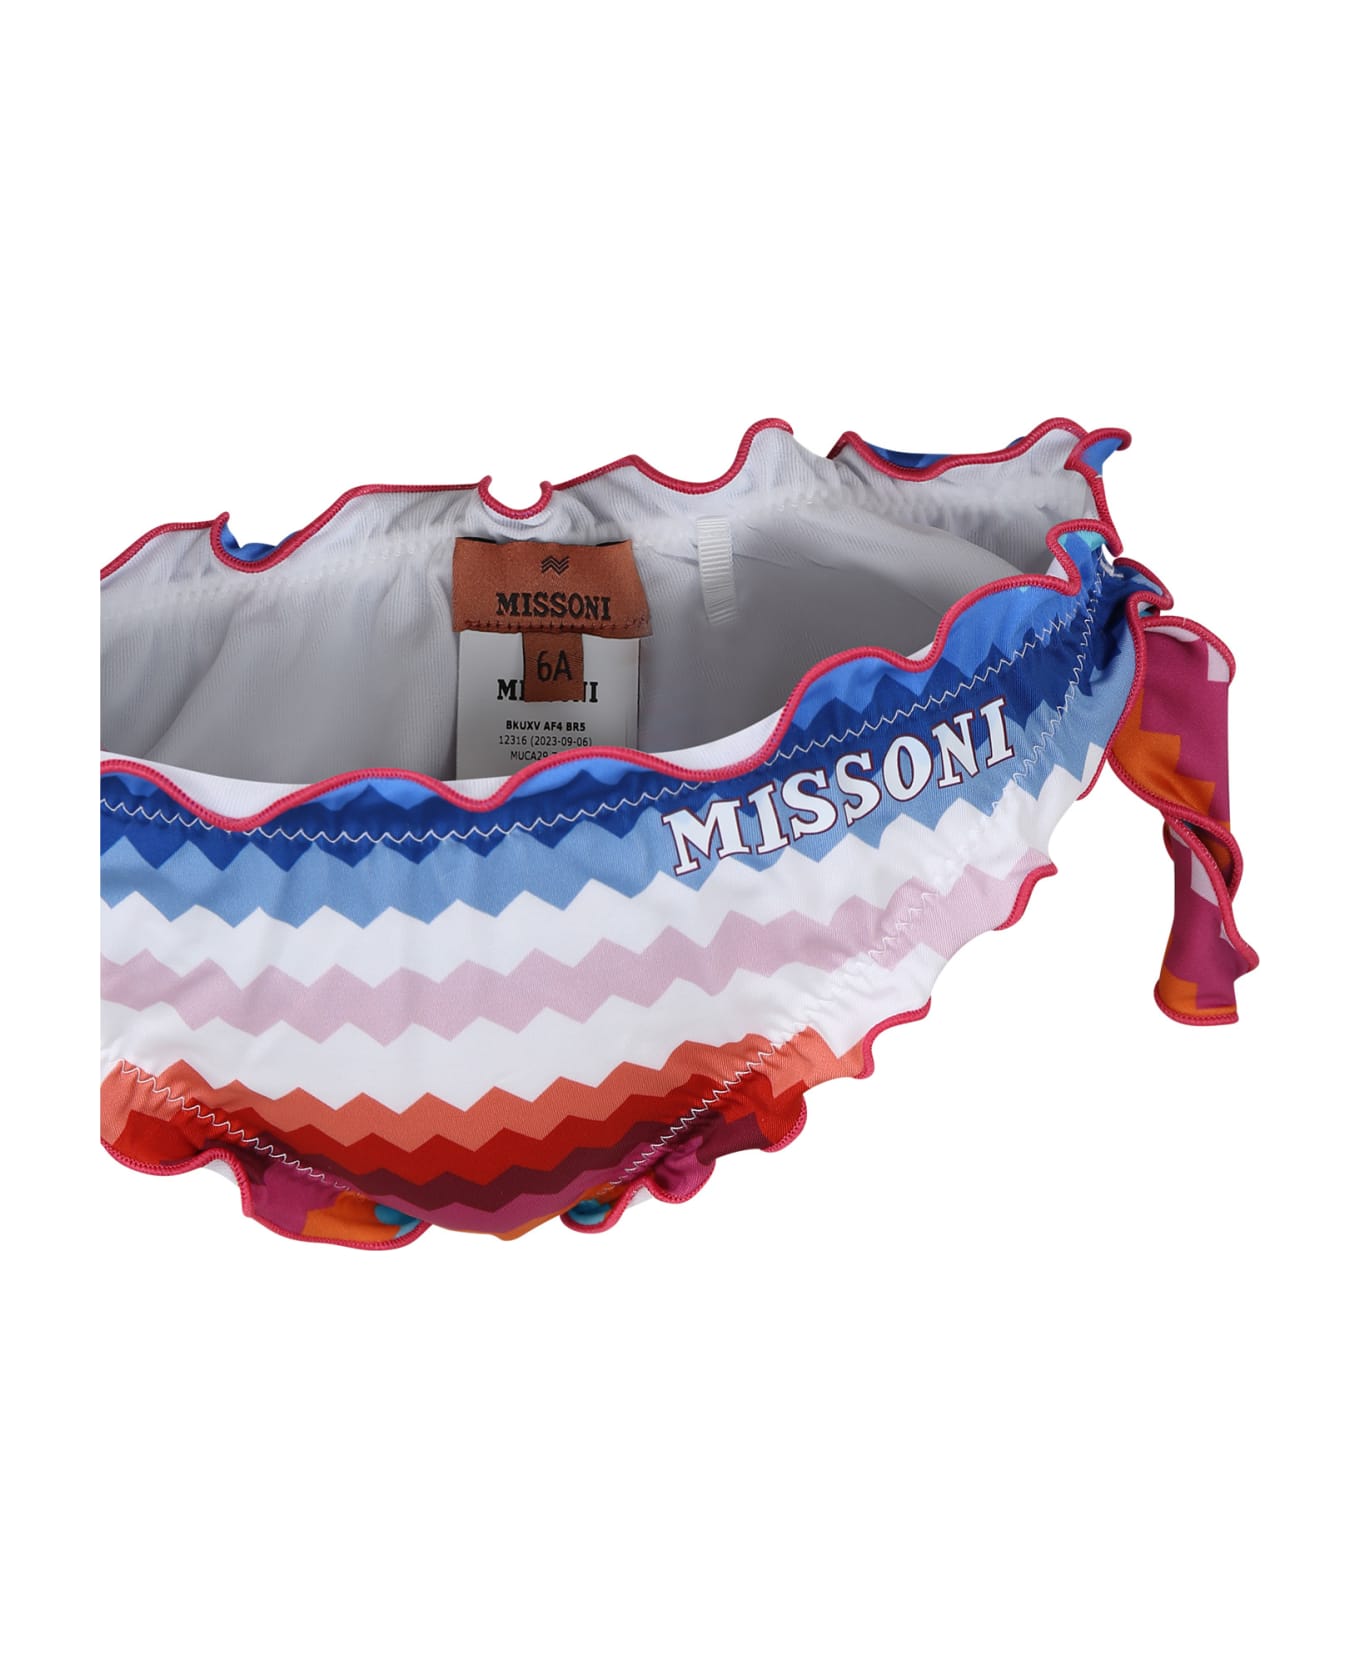 Missoni Multicolor Bikini For Girl - Multicolor